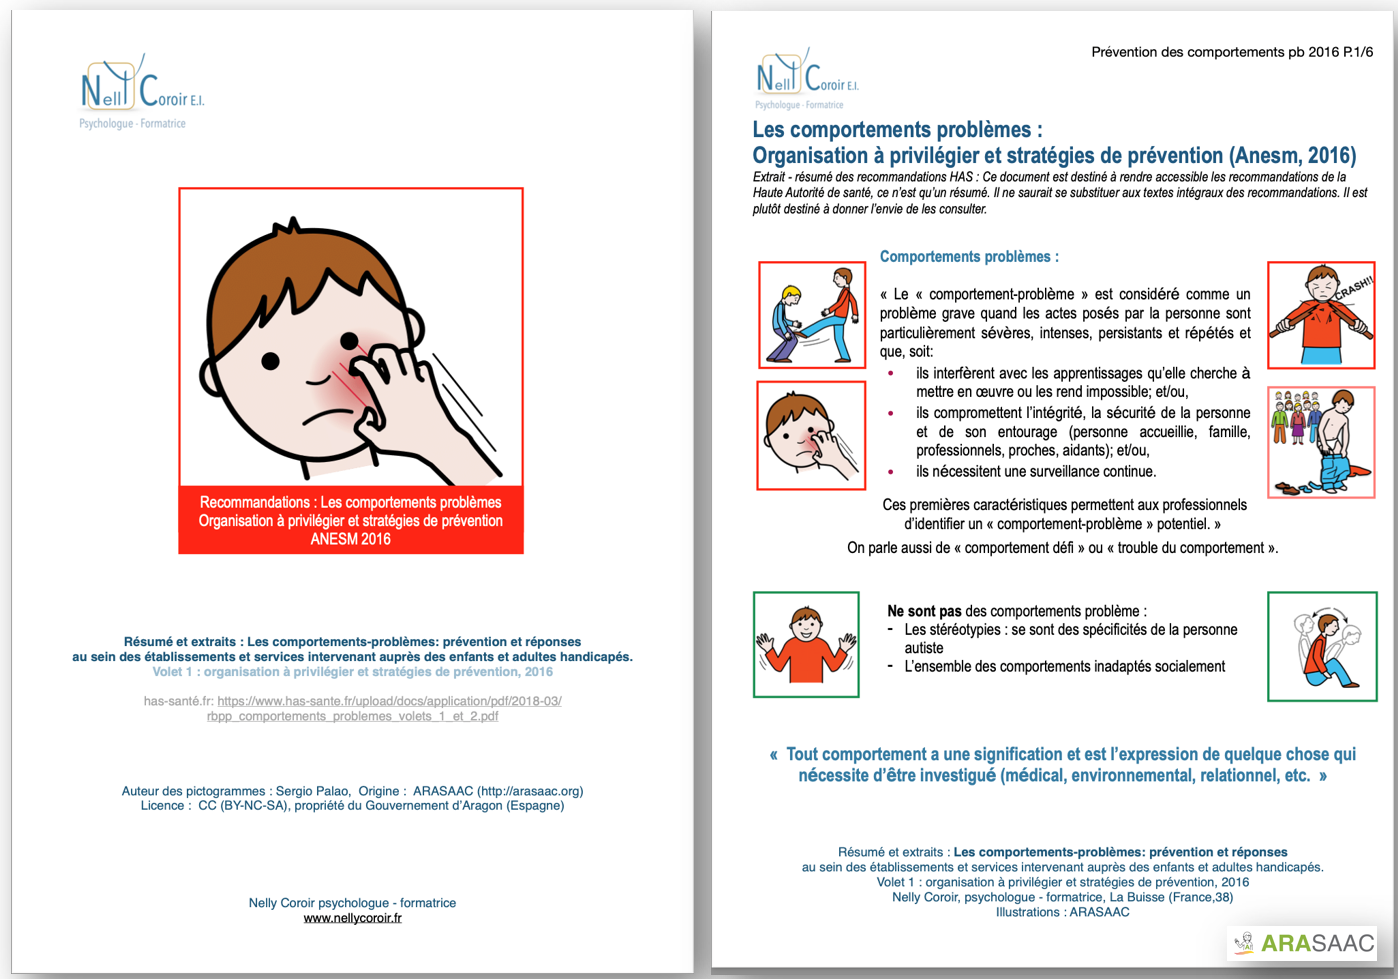 Extrait/résumé illustré : Recommandations ANESM : Comportements problèmes : organisation à privilégier et stratégies de prévention